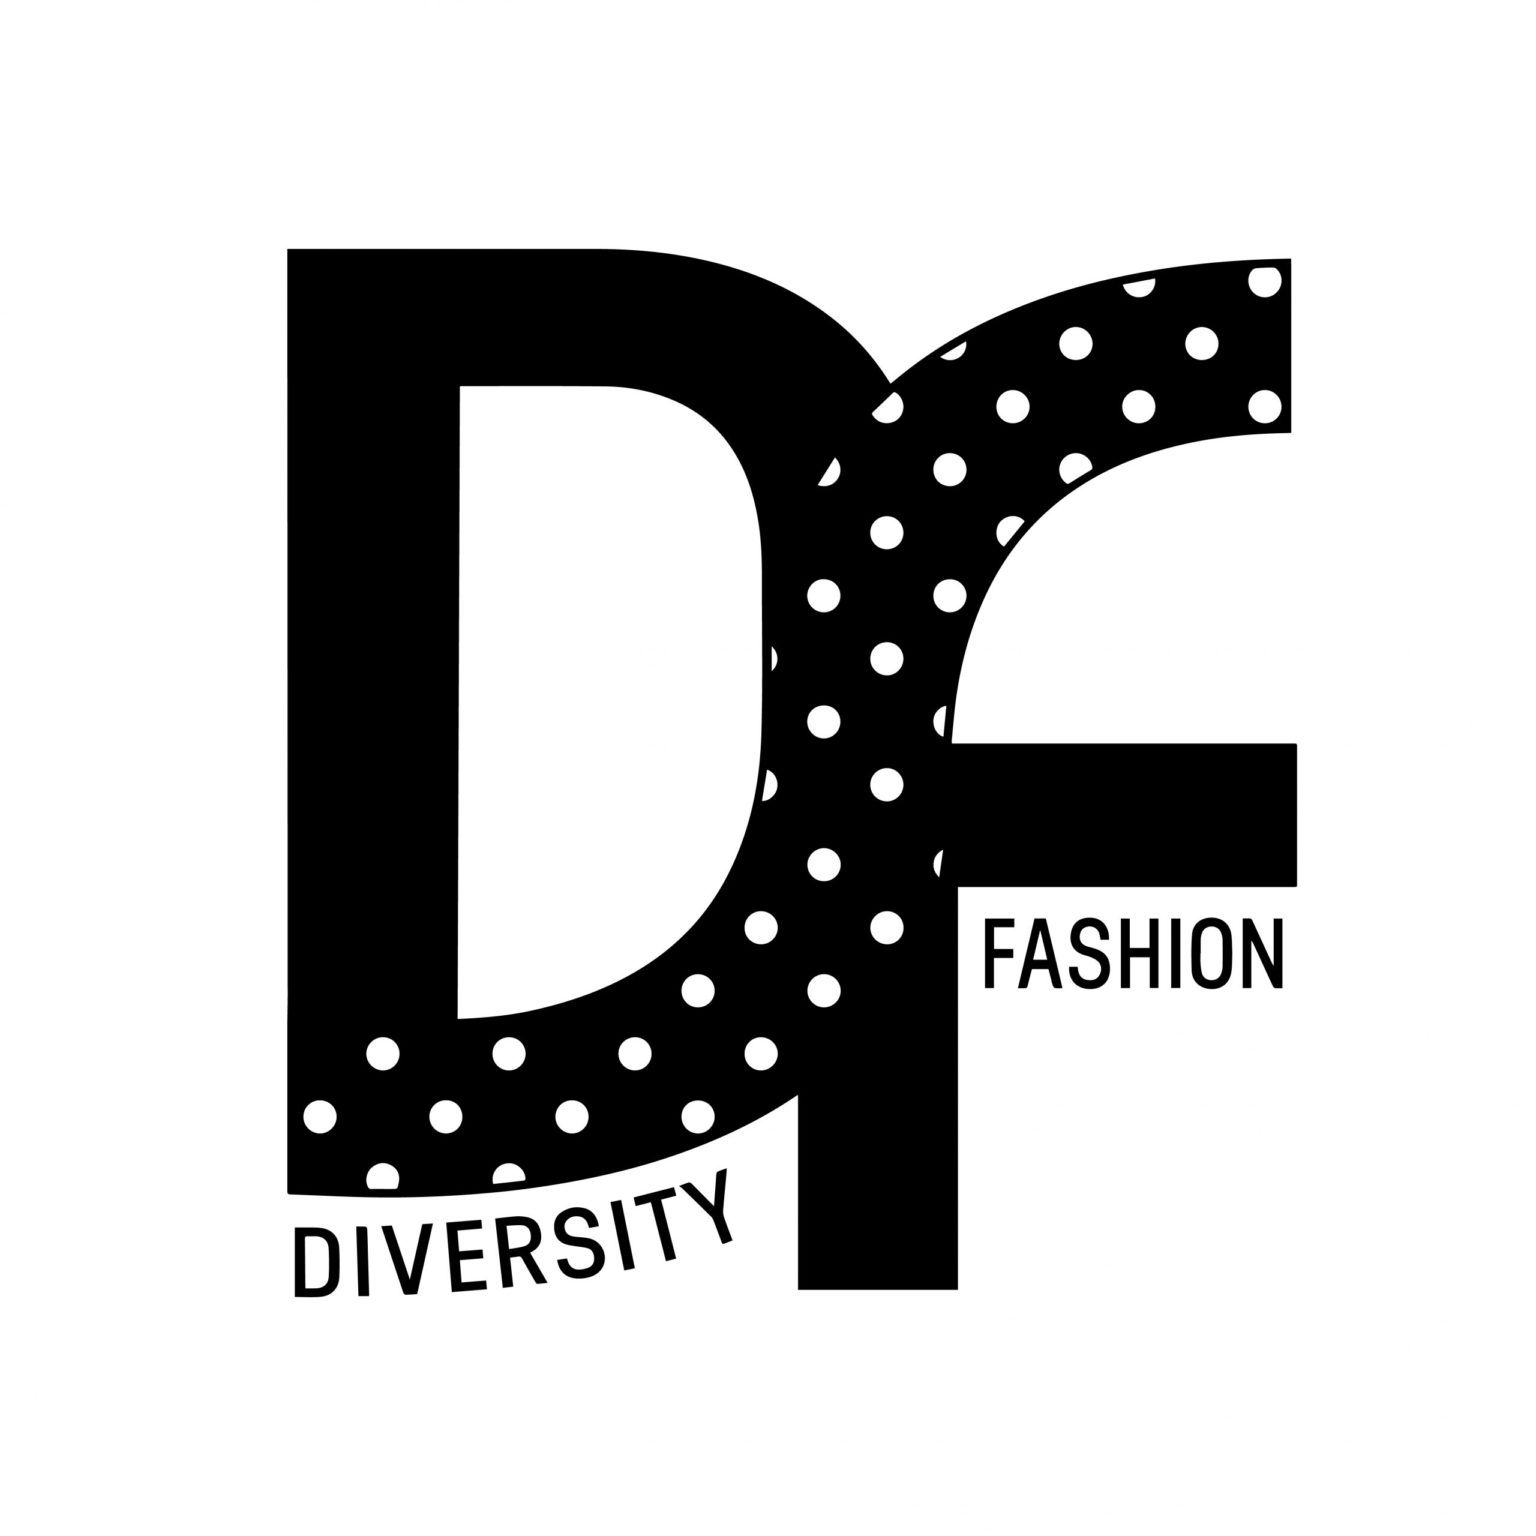 Diversity Fashion